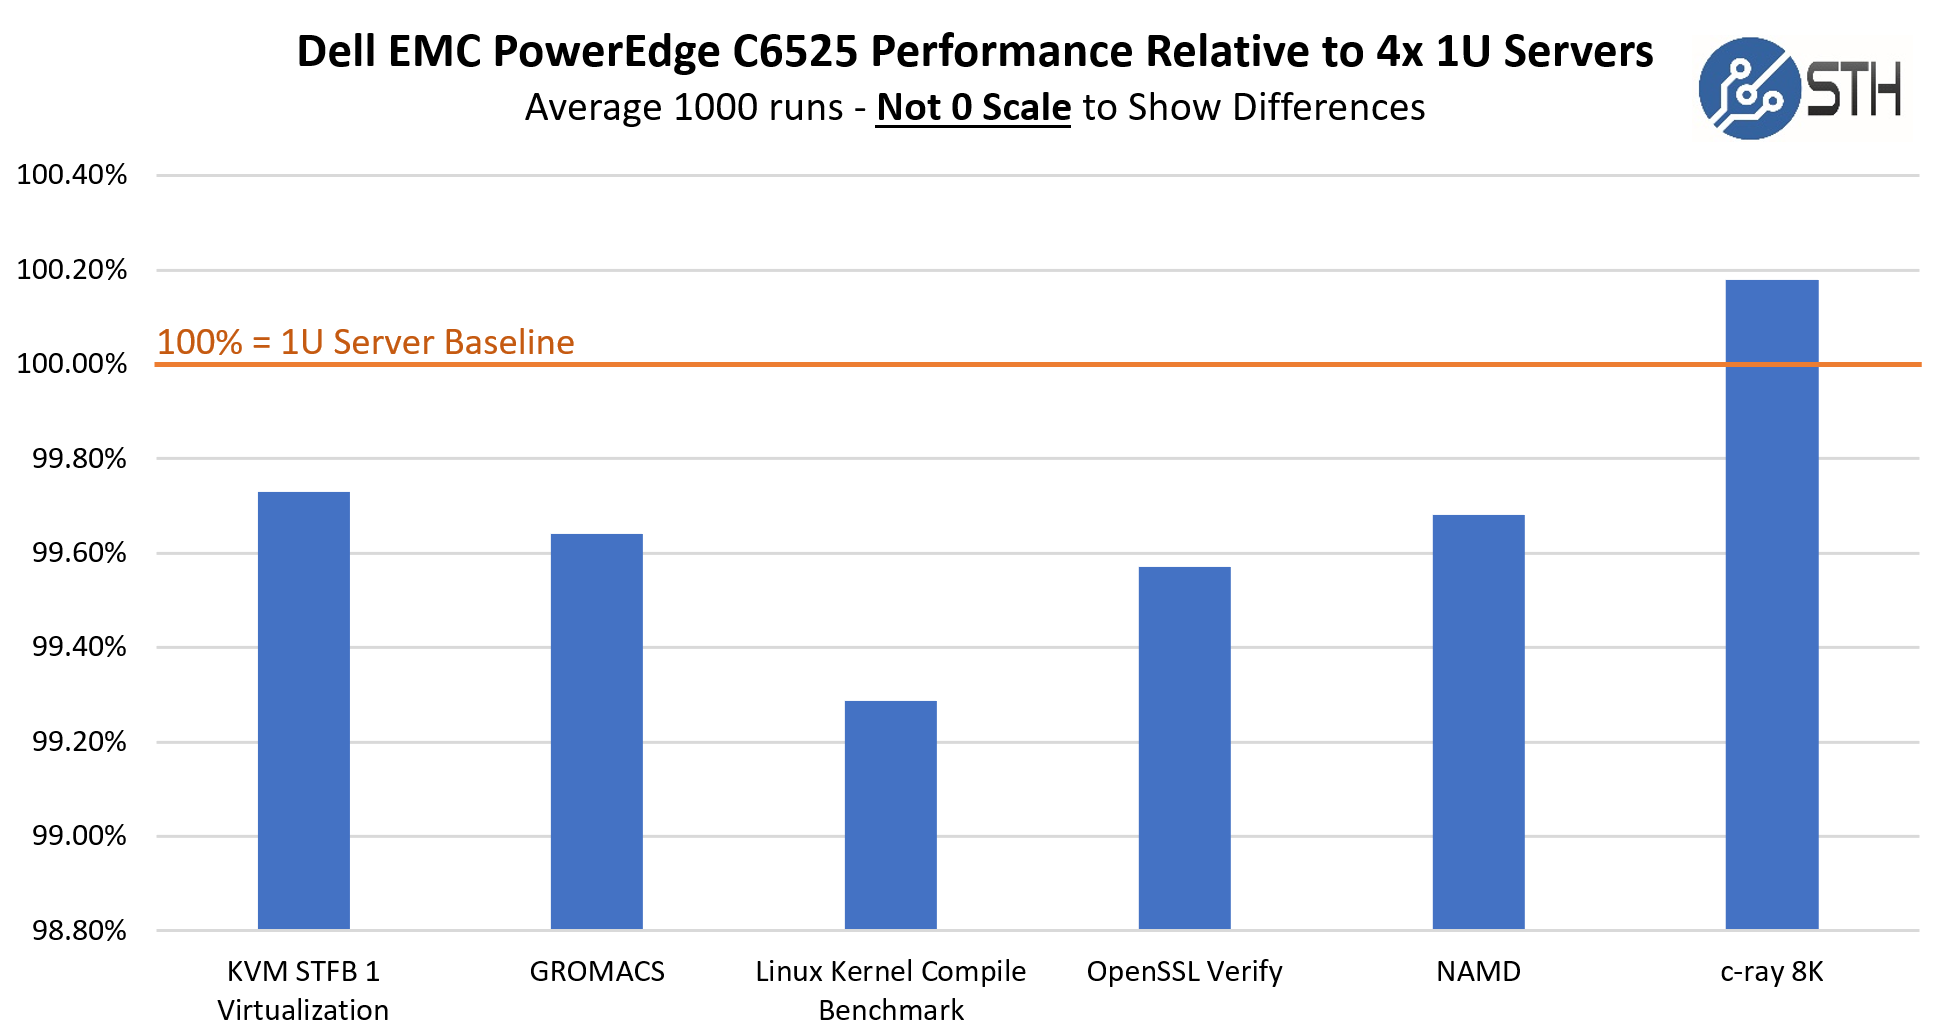 Dell PowerEdge C6525 V. 4x 1U 2P EPYC 7452 Server Performance